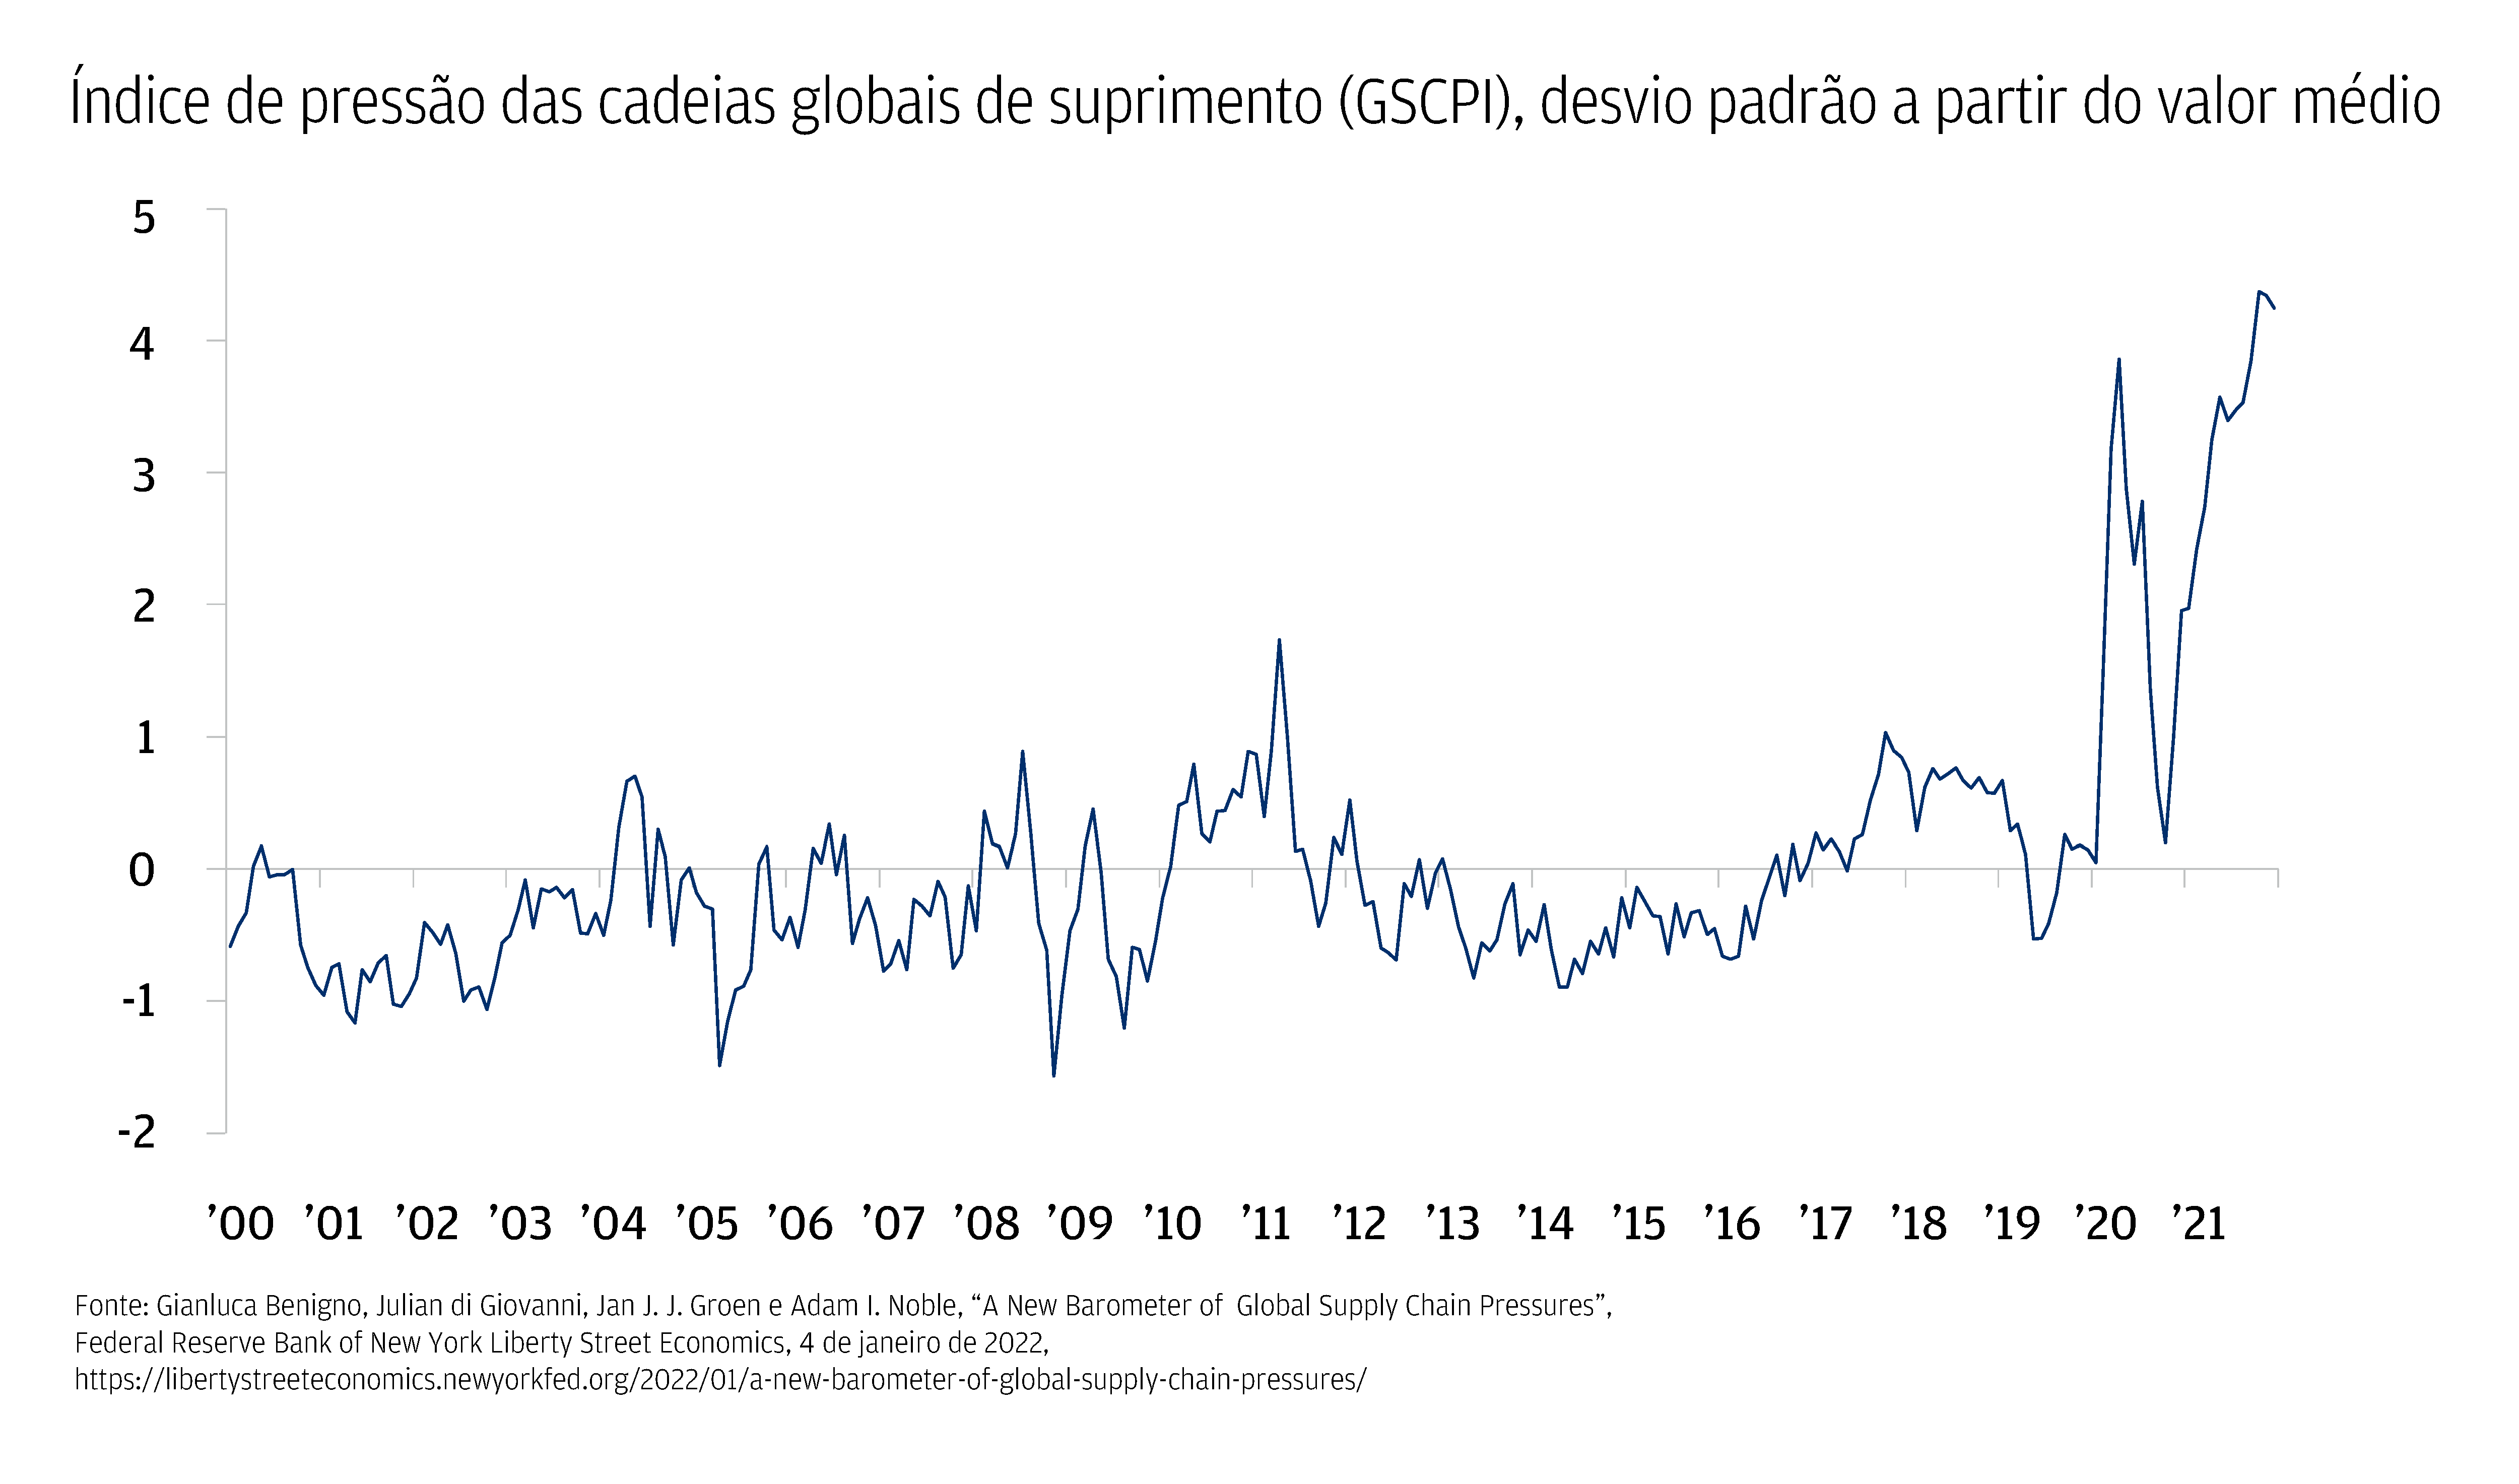 O gráfico mostra o índice global de pressão na cadeia de suprimentos, com dados do ano de 2000 a 2021.